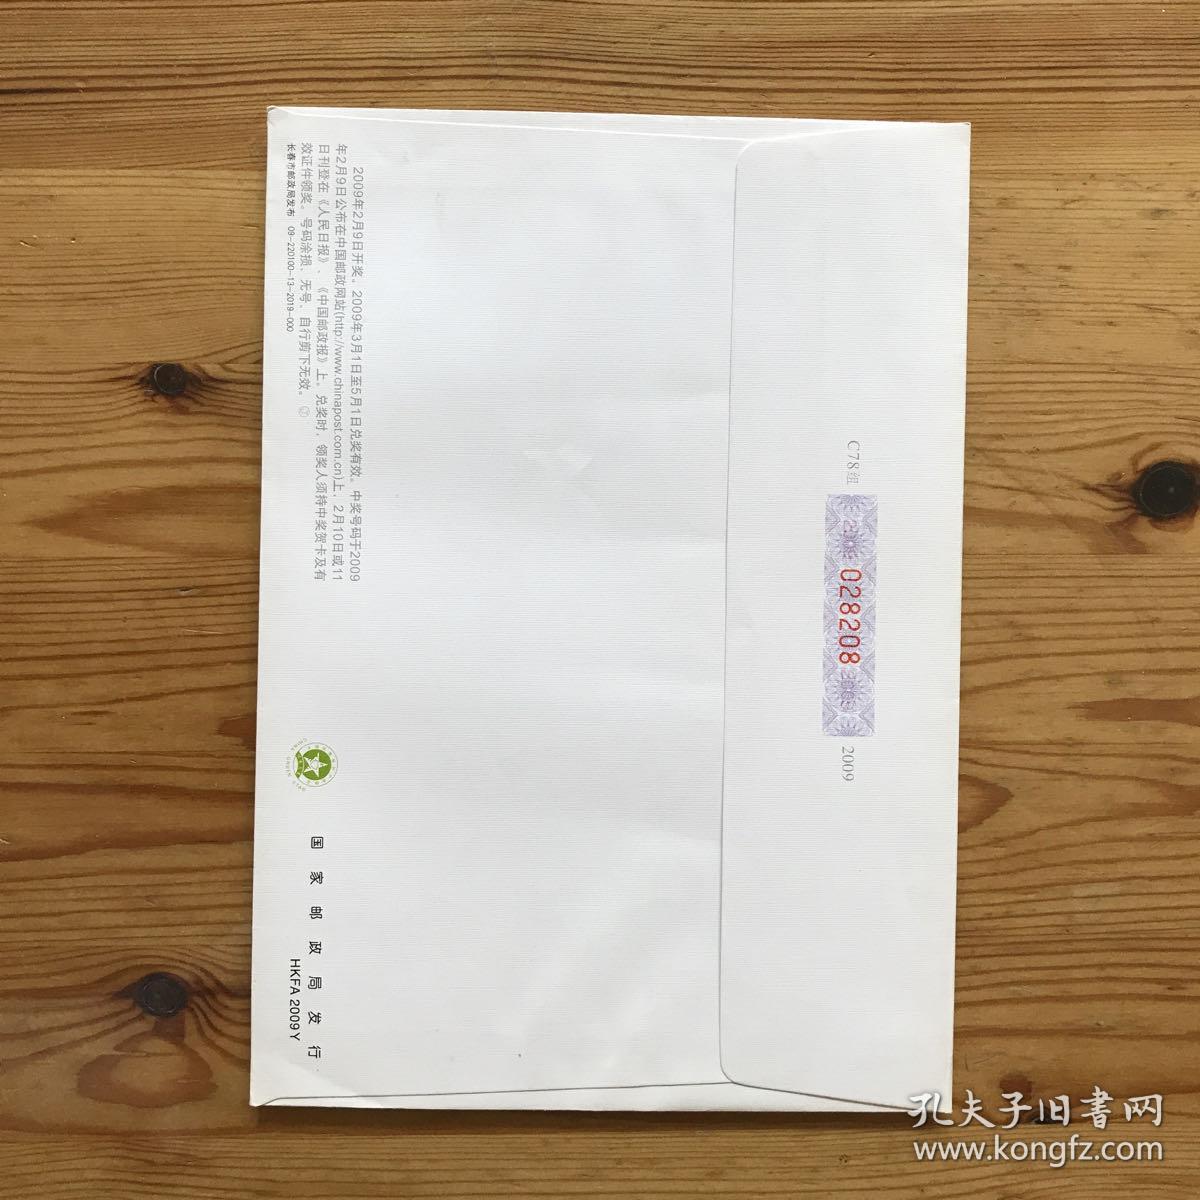 2009年中国联通长春市分公司邮资信封